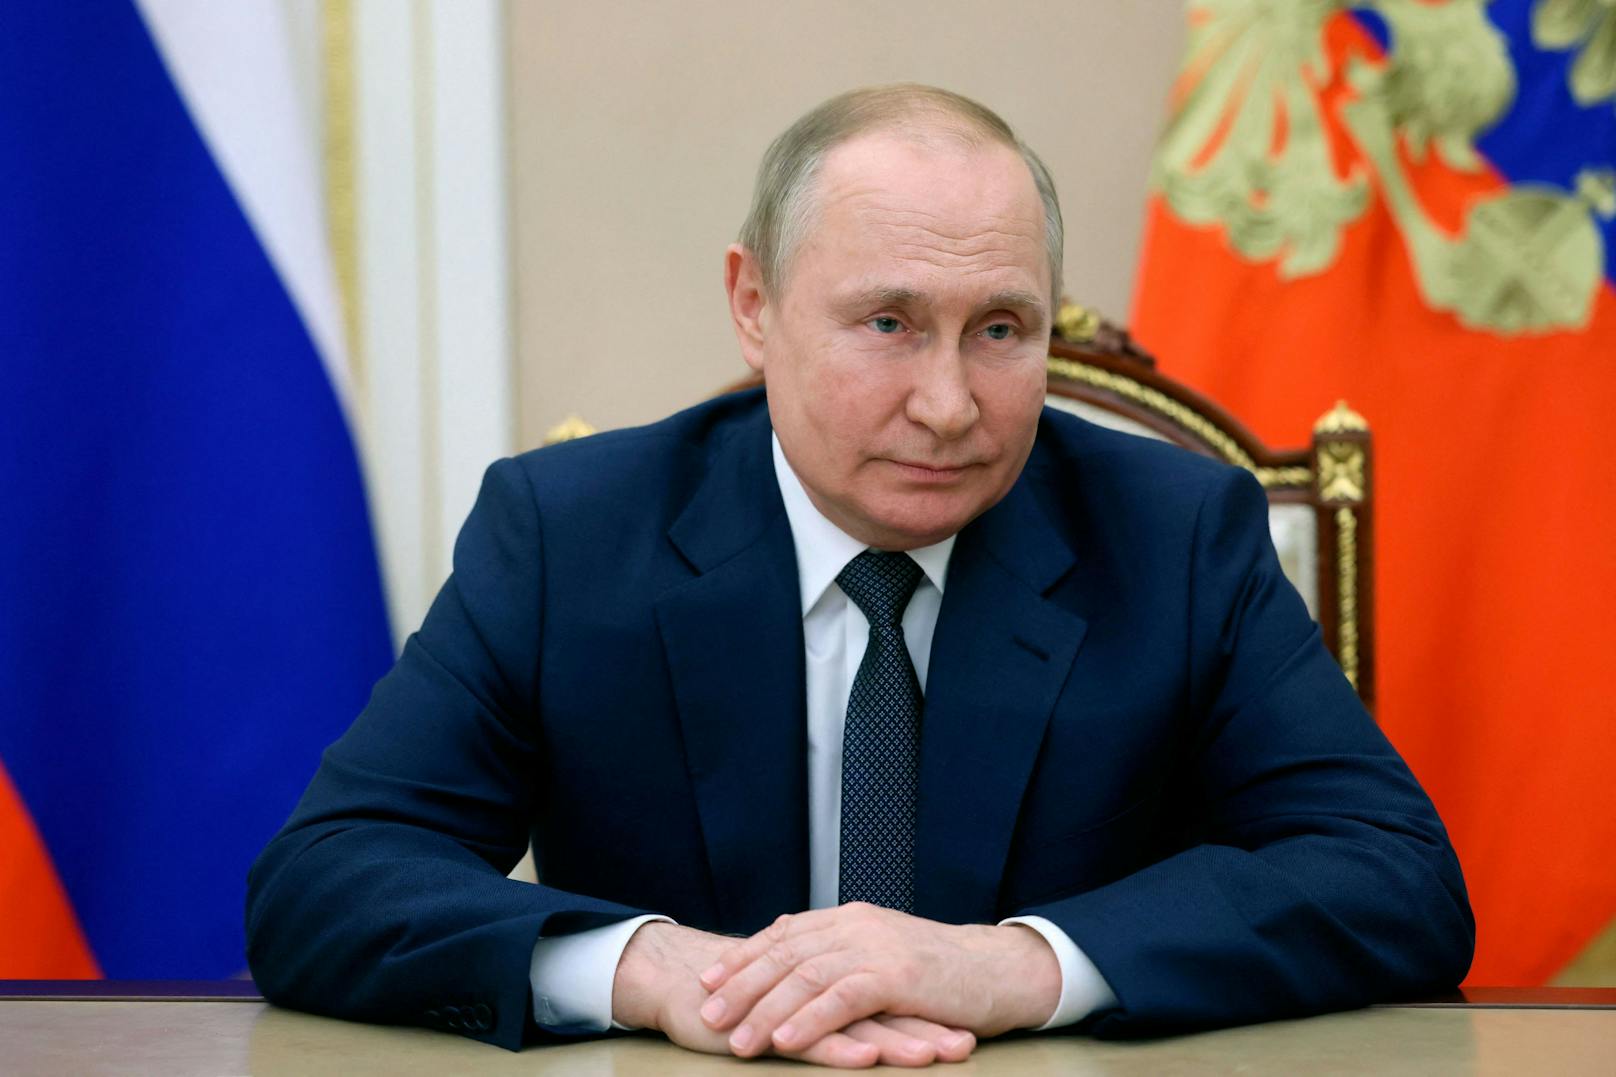 Immer wieder gibt es Gerüchte über schwere Erkrankungen von Wladimir Putin. Nun heißt es, dass ihm nicht mehr viel Zeit bleiben würde.